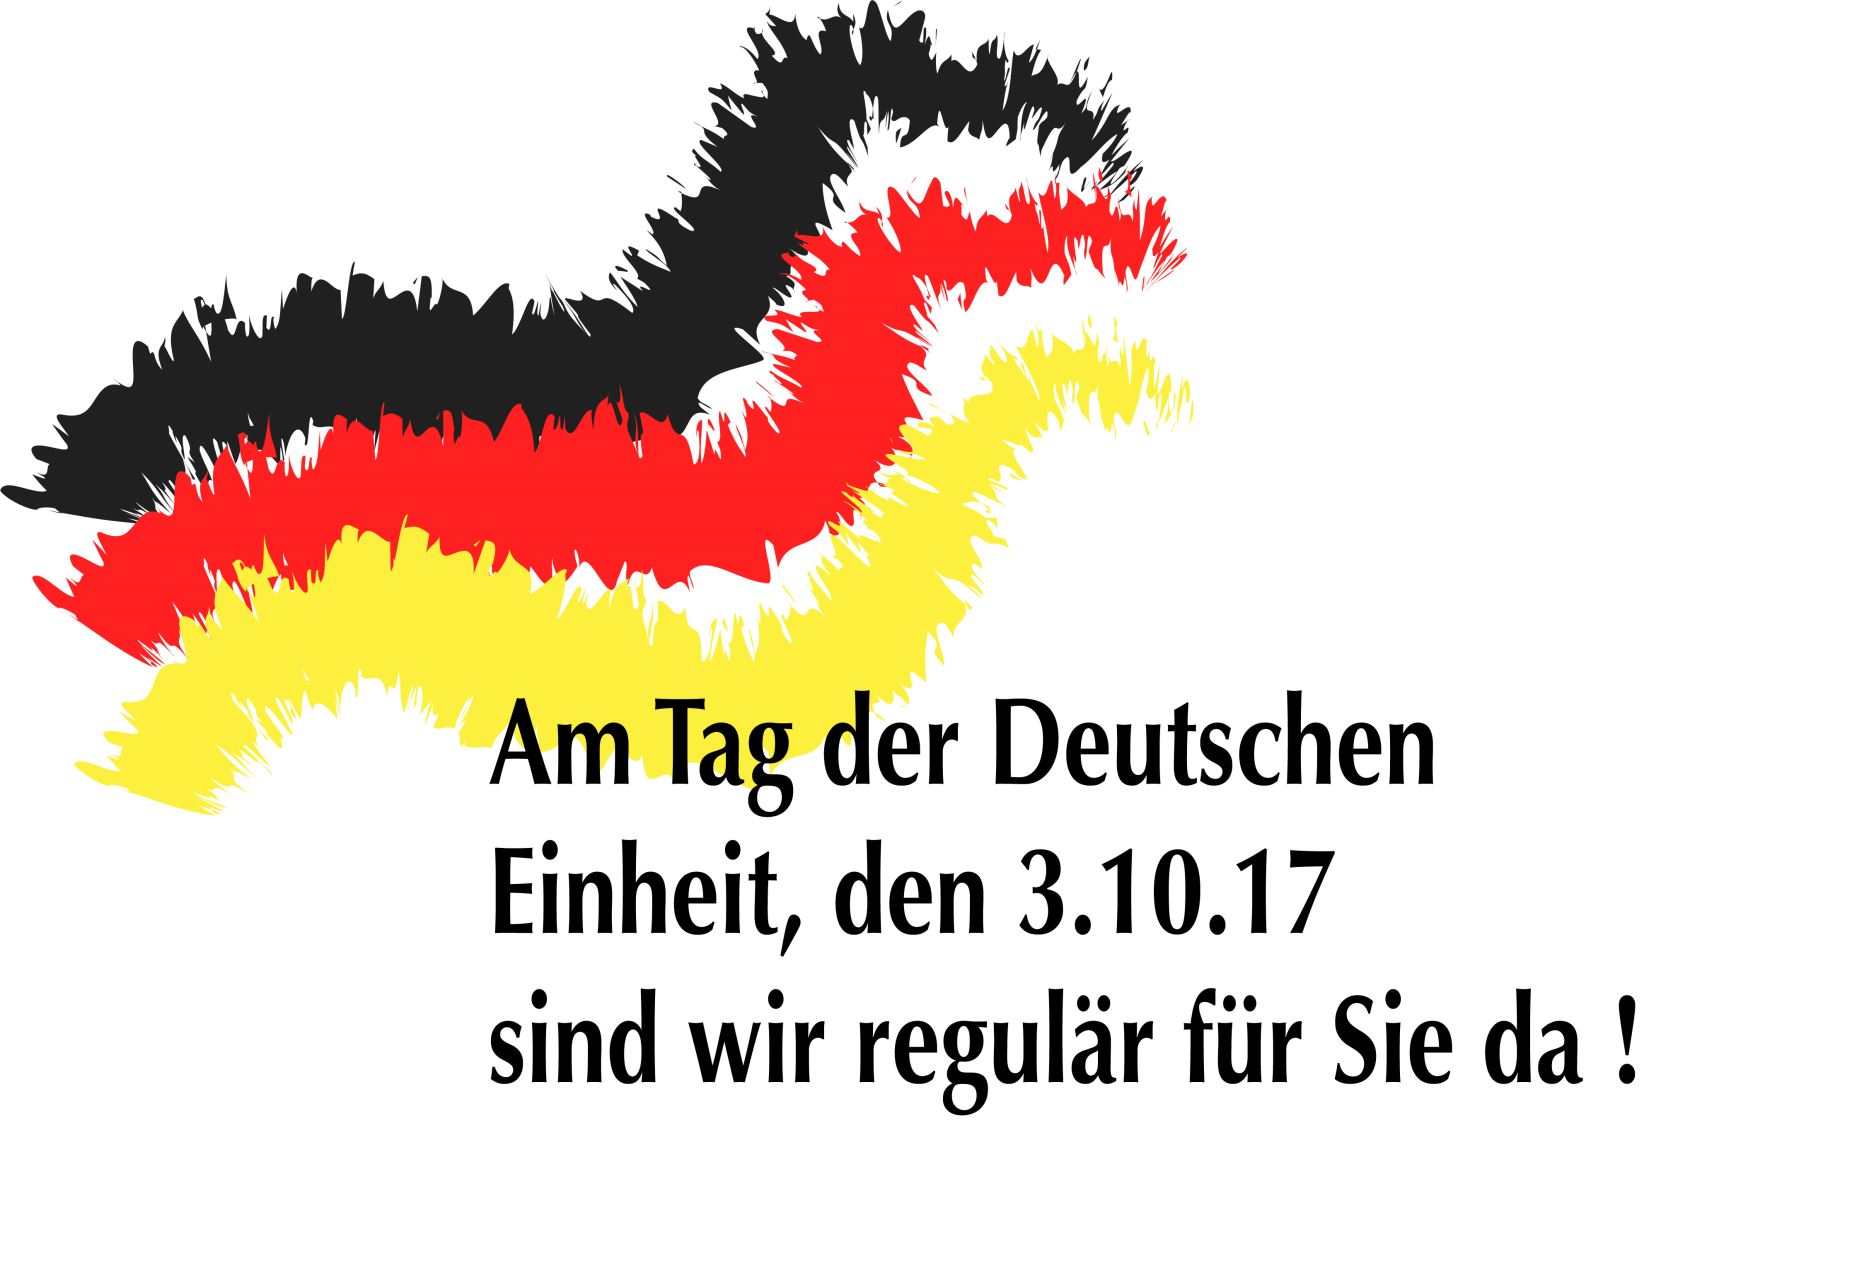 Regulär am Tag der Deutschen Einheit! Dal Compare